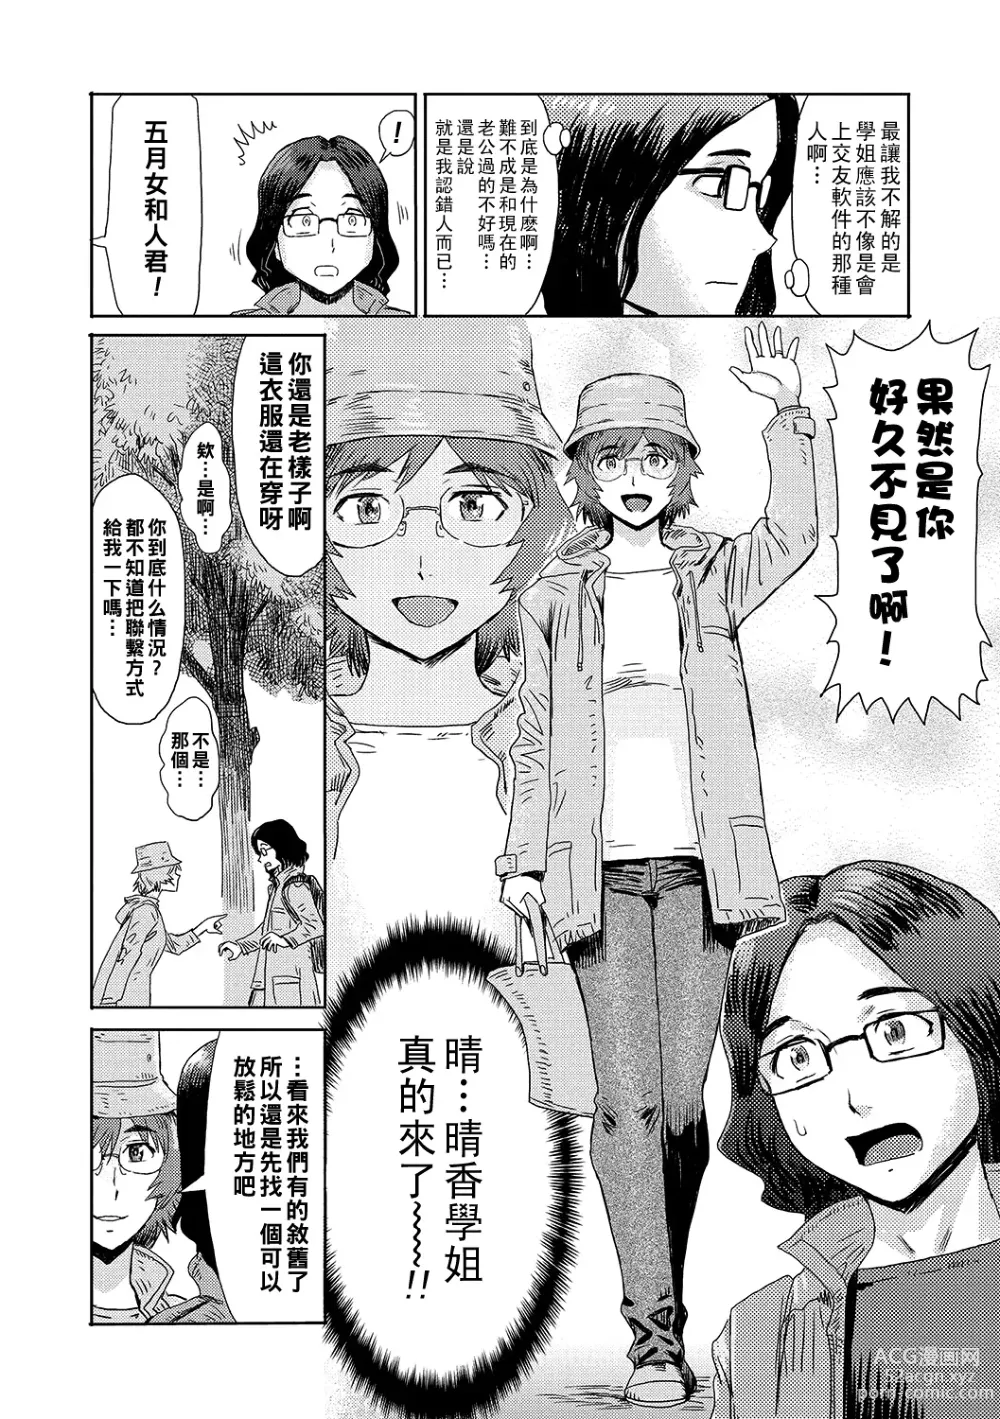 Page 2 of manga Hitodzumakurabu Harukanaru Saikai